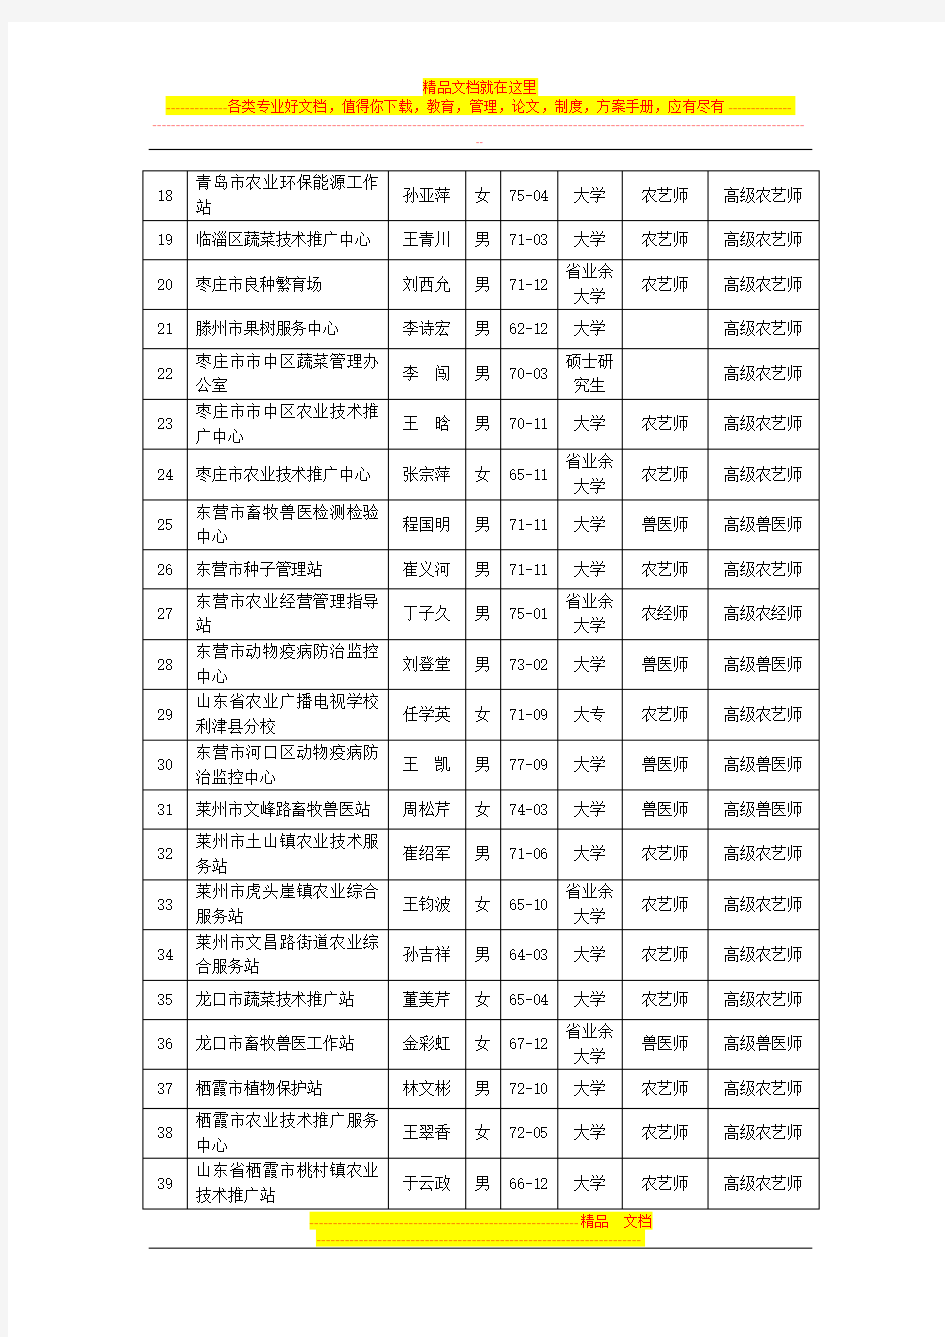 山东省农业专业技术职务副高级资格评审通过人员情况公示表